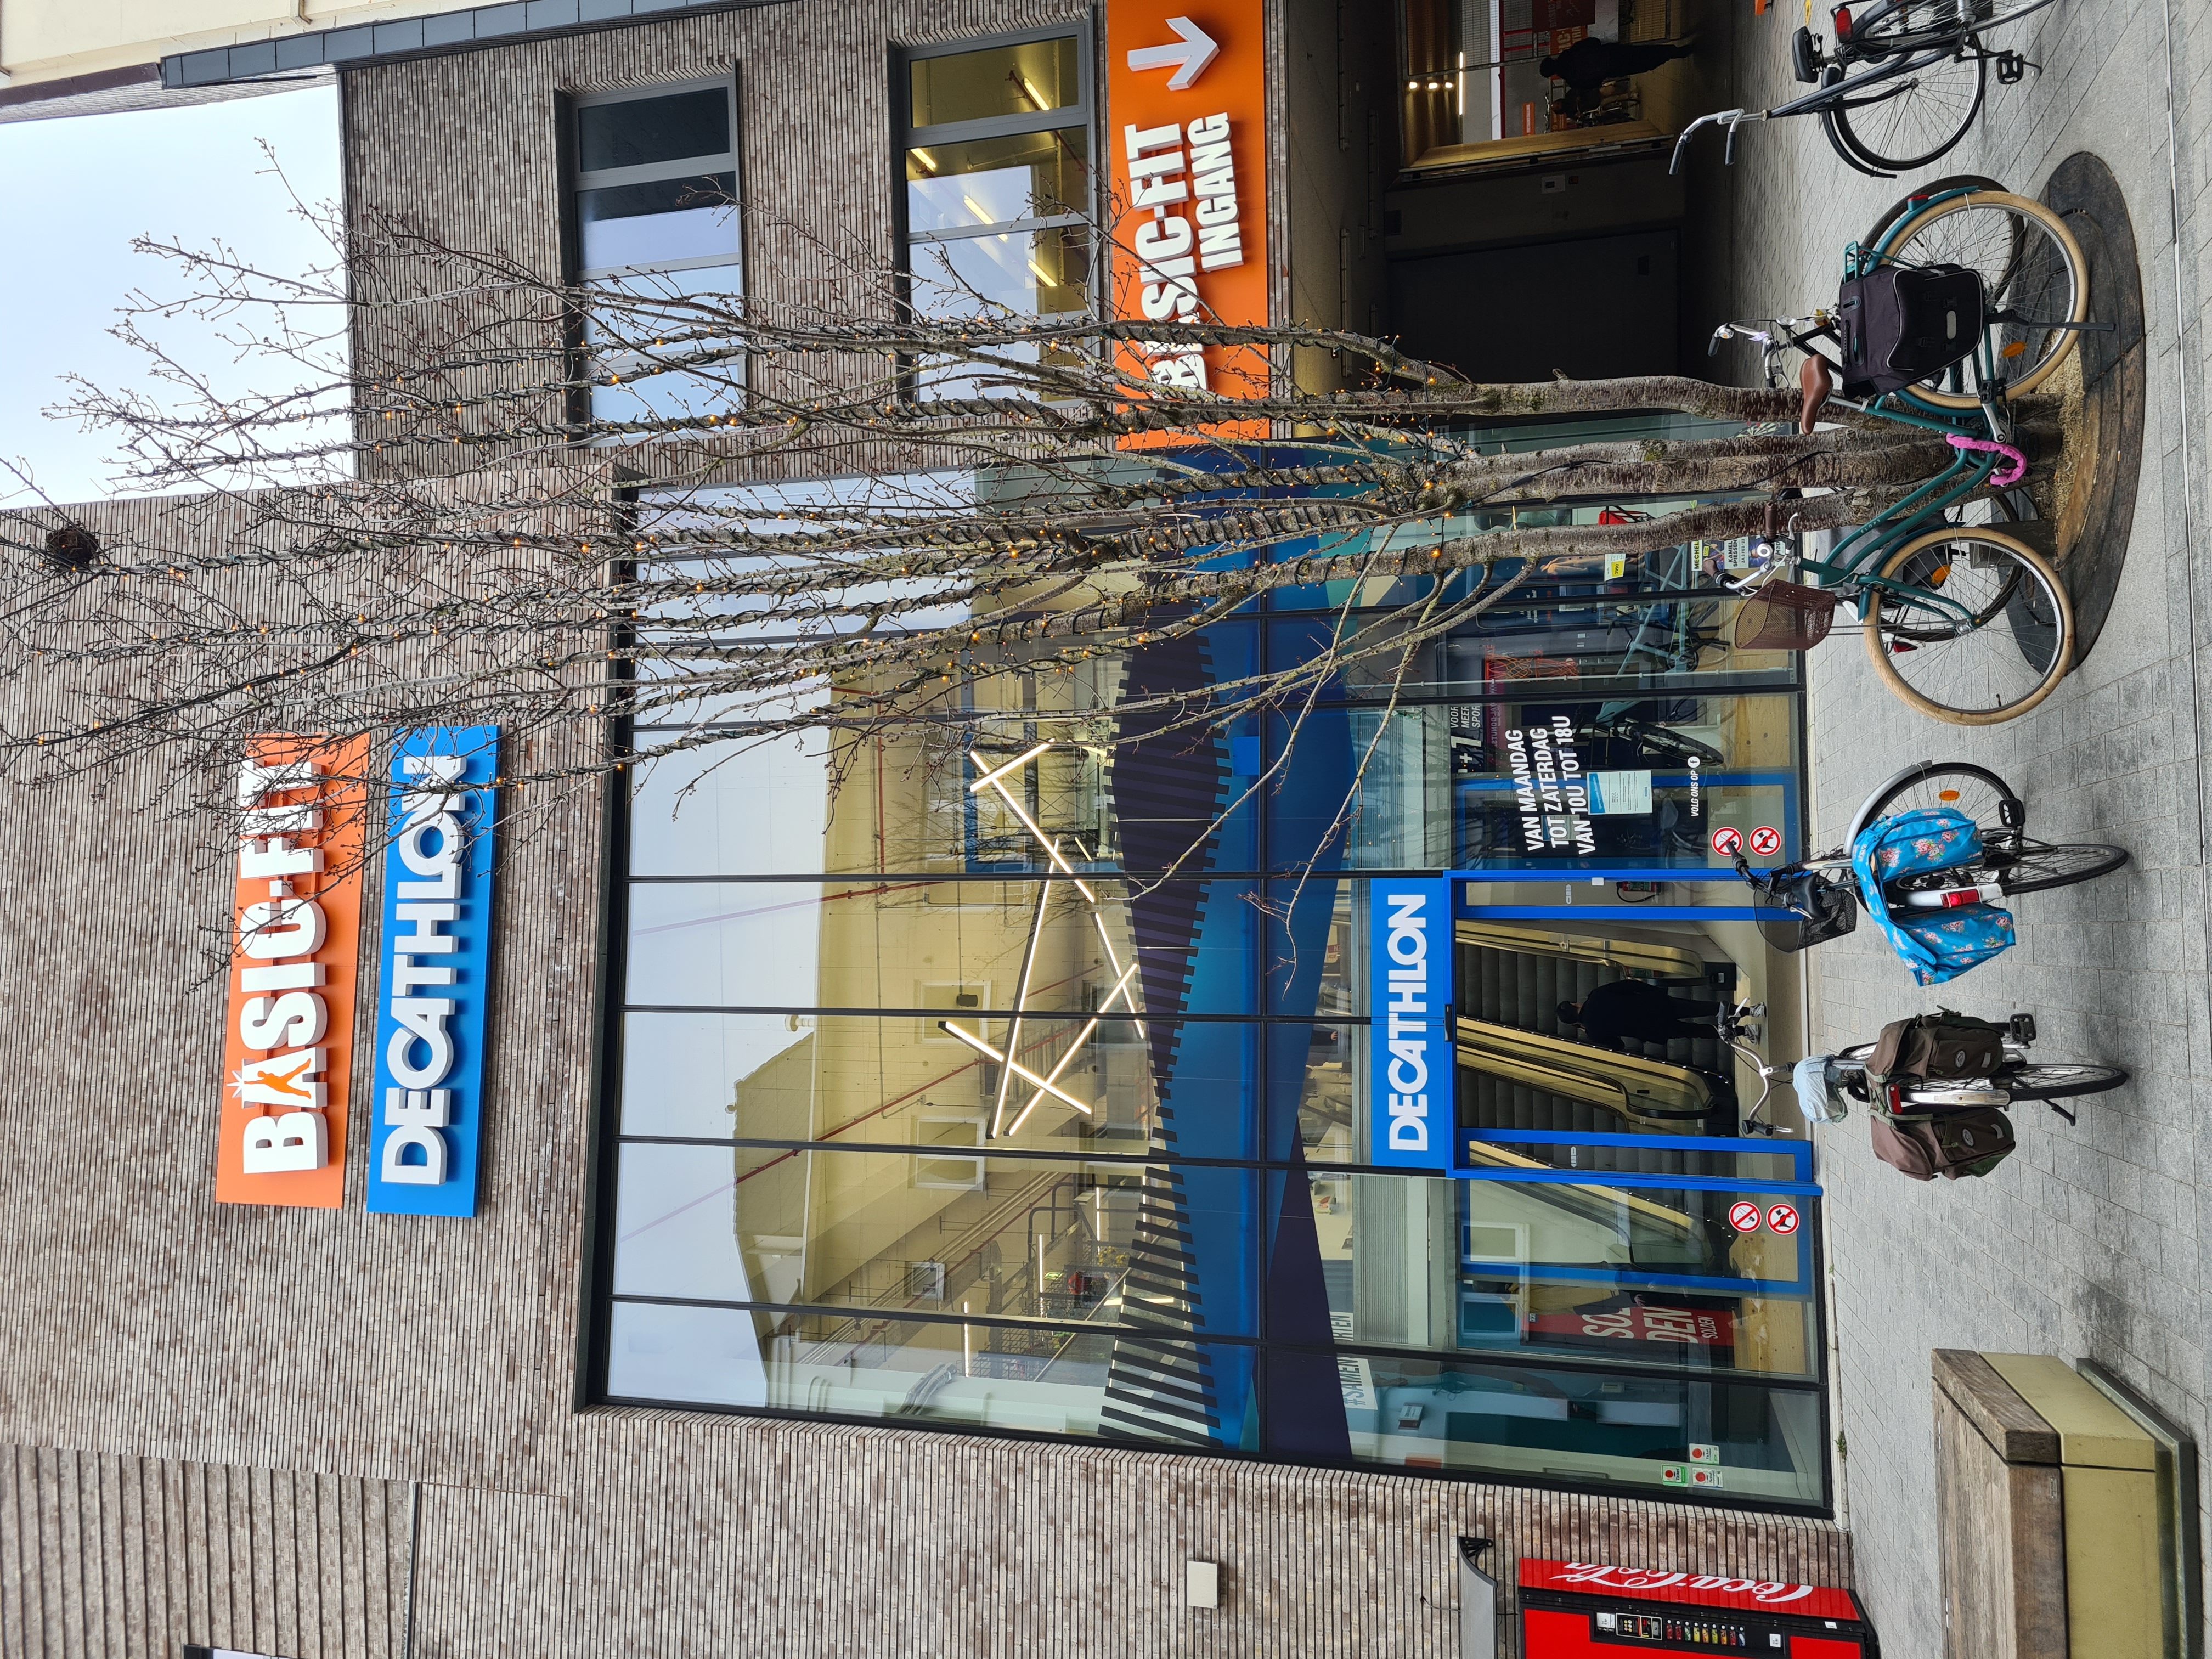 Decathlon winkel in Mechelen sluit deuren op 31 maart